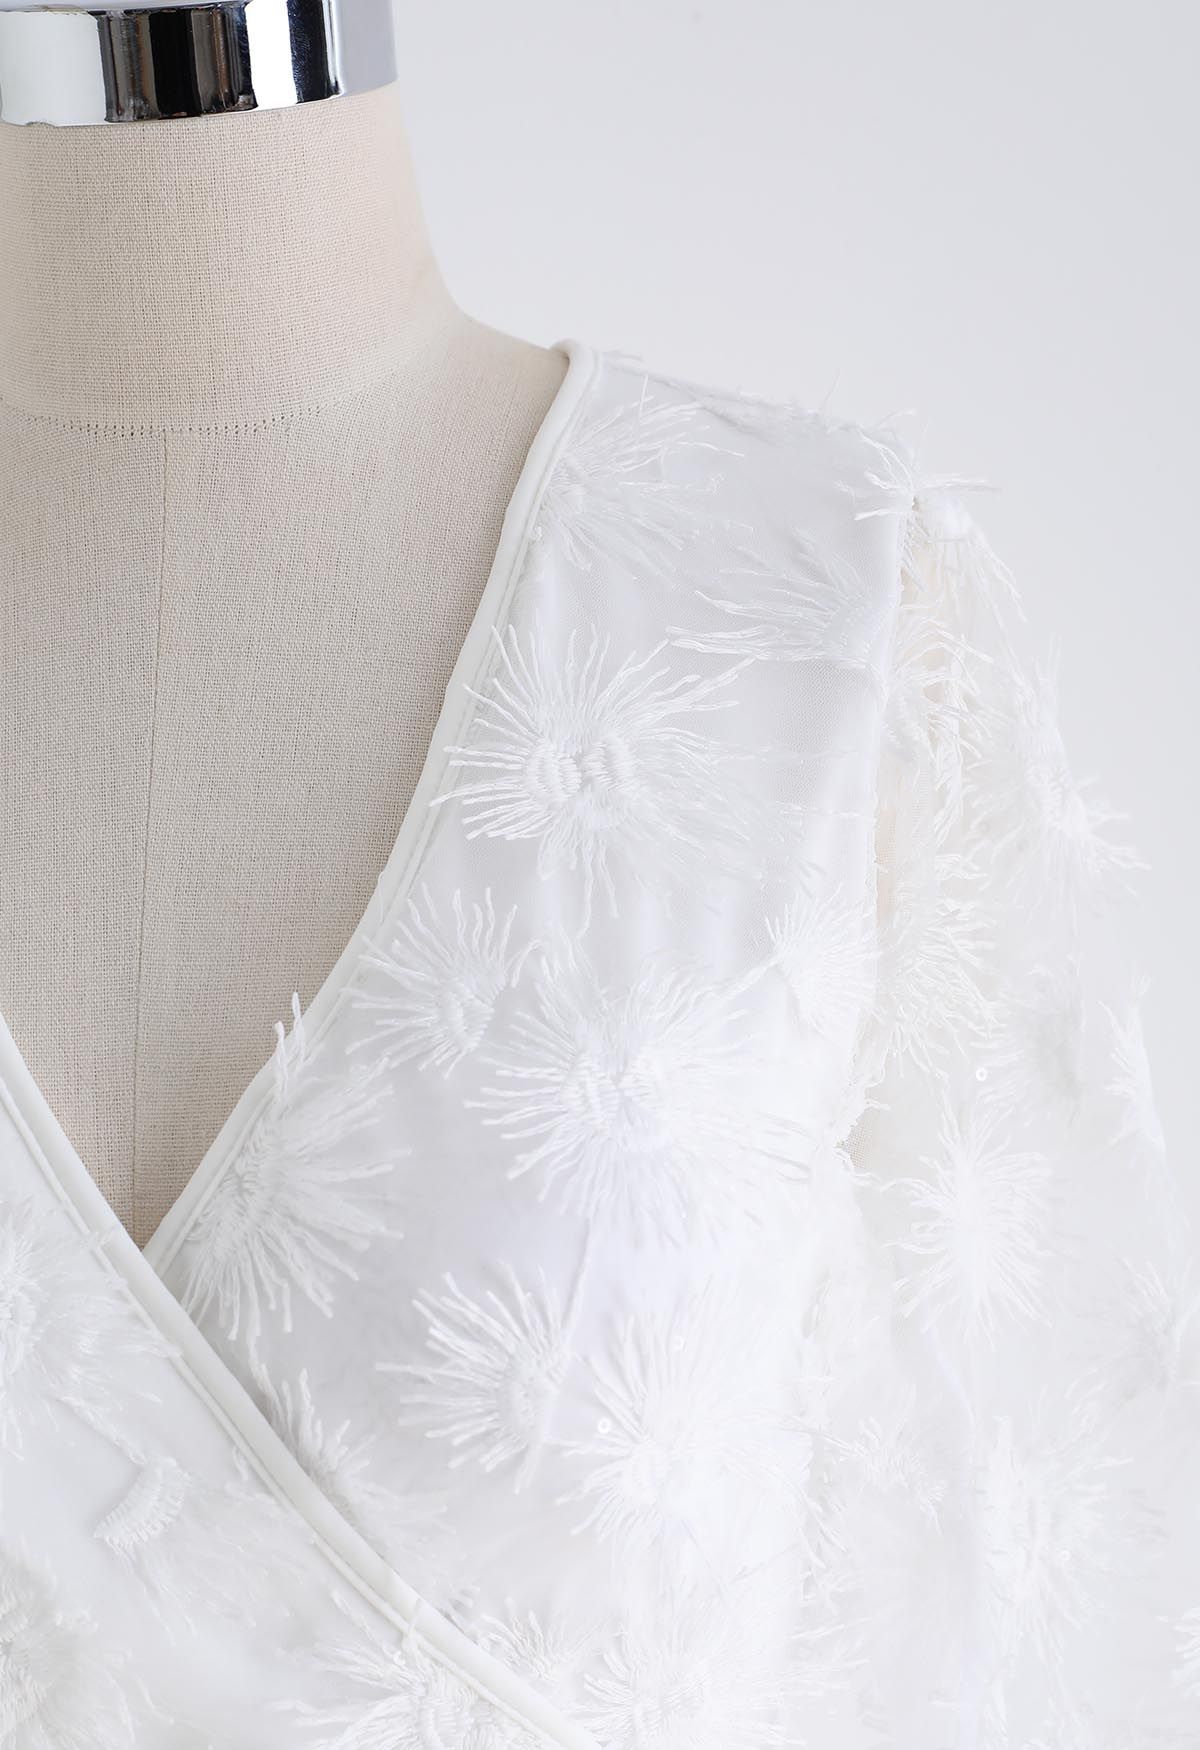 Conjunto de traje de baño y pareo con mangas transparentes y borlas florales